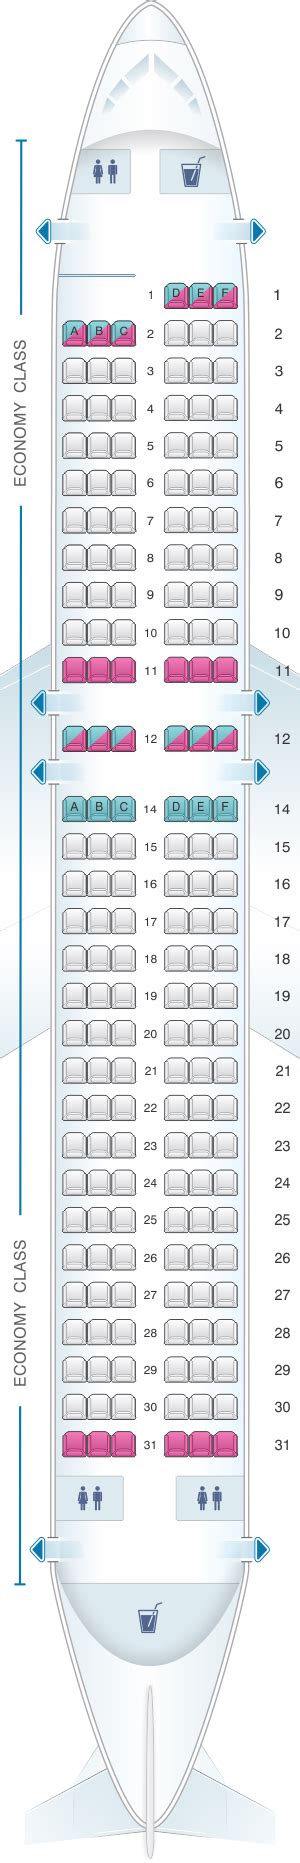 Seat map Airbus A319-100 Allegiant Air. Best seat